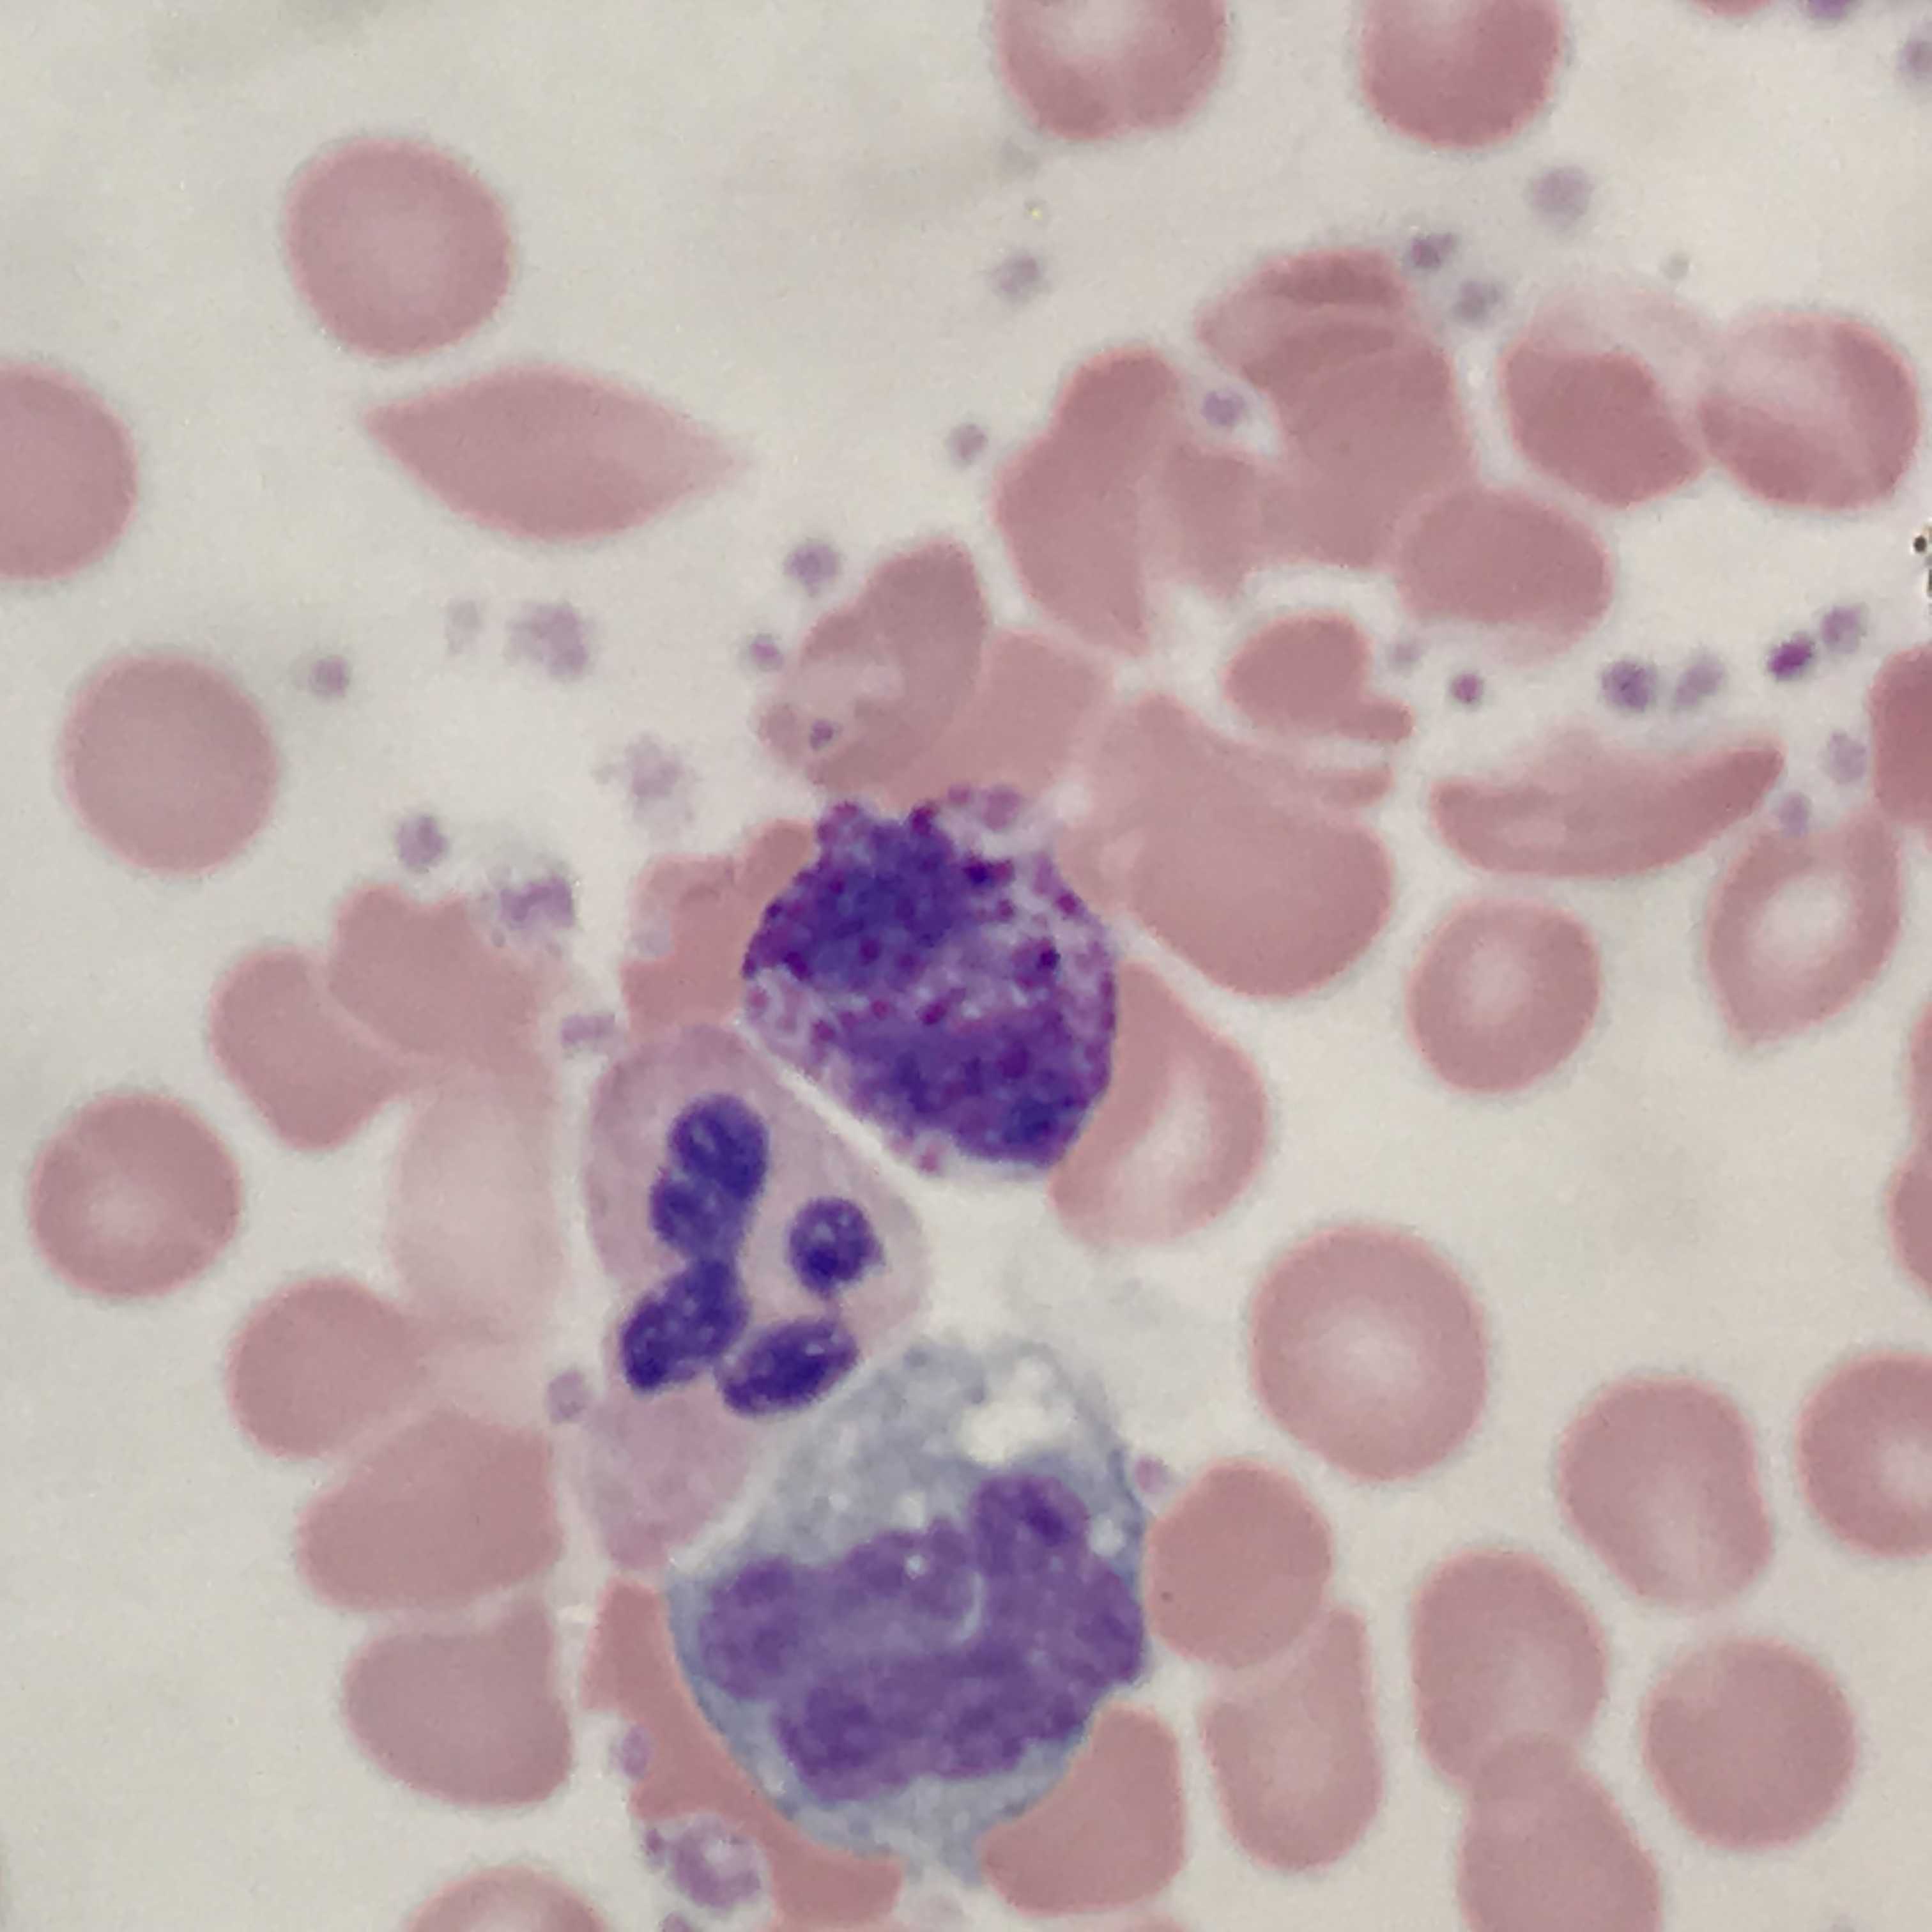 <p>Basophil (center) With Adjacent Neutrophil and Monocyte</p>